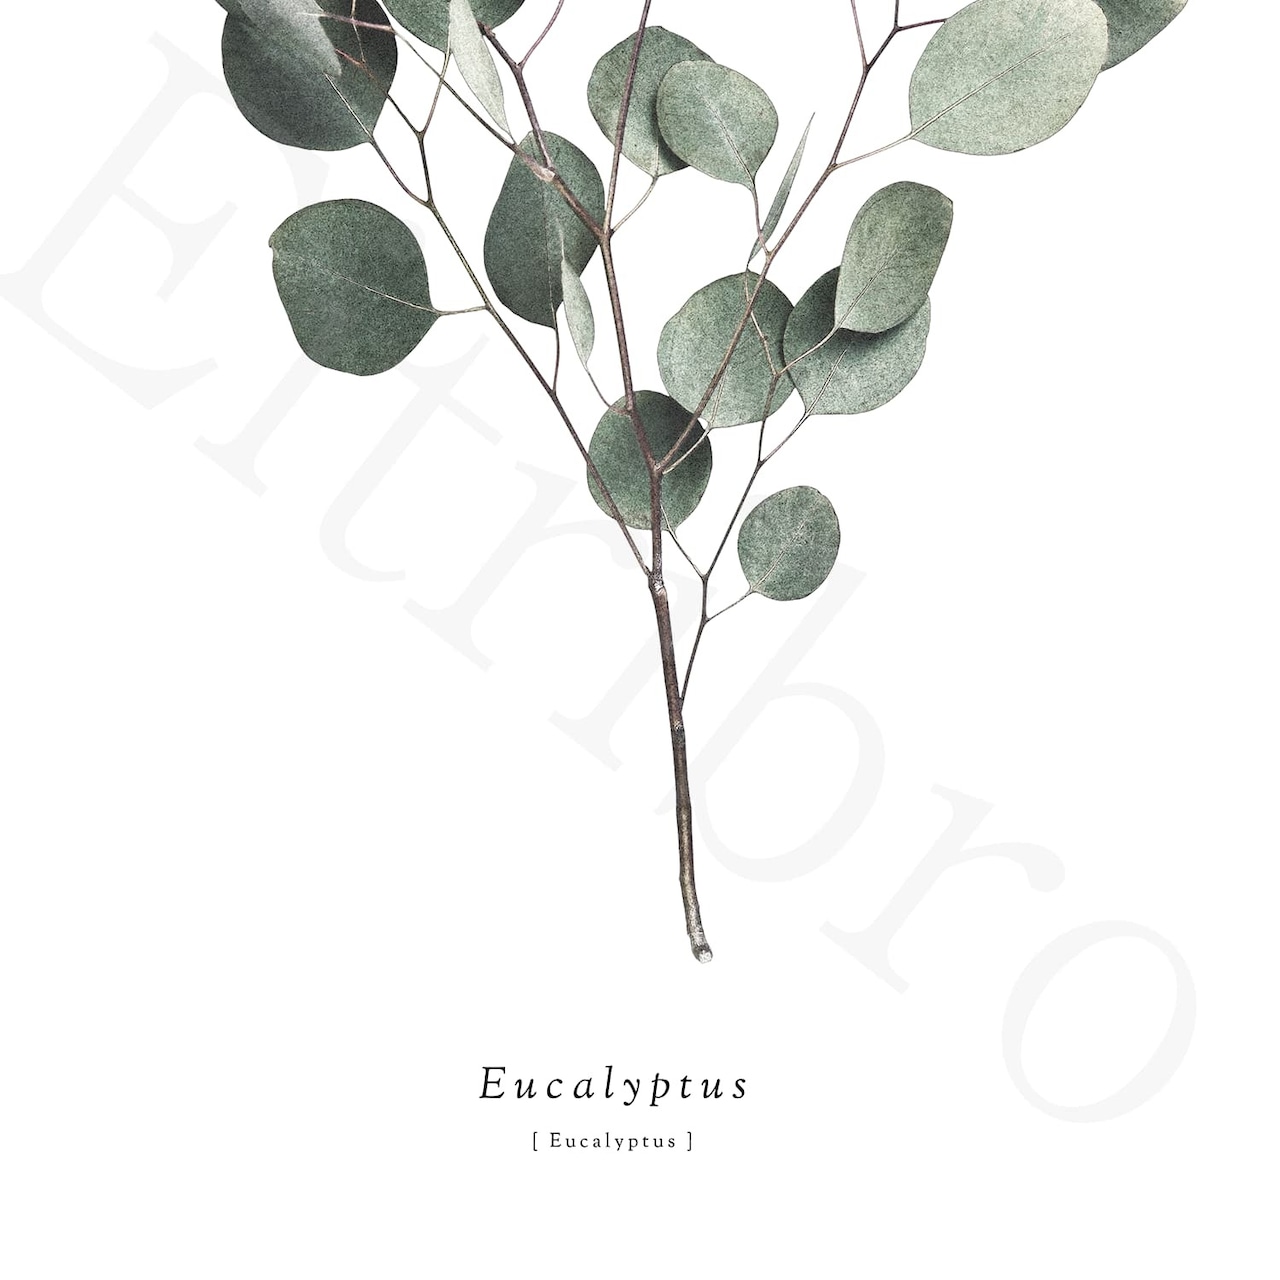 アートポスター / S.eucalyptus  eb109